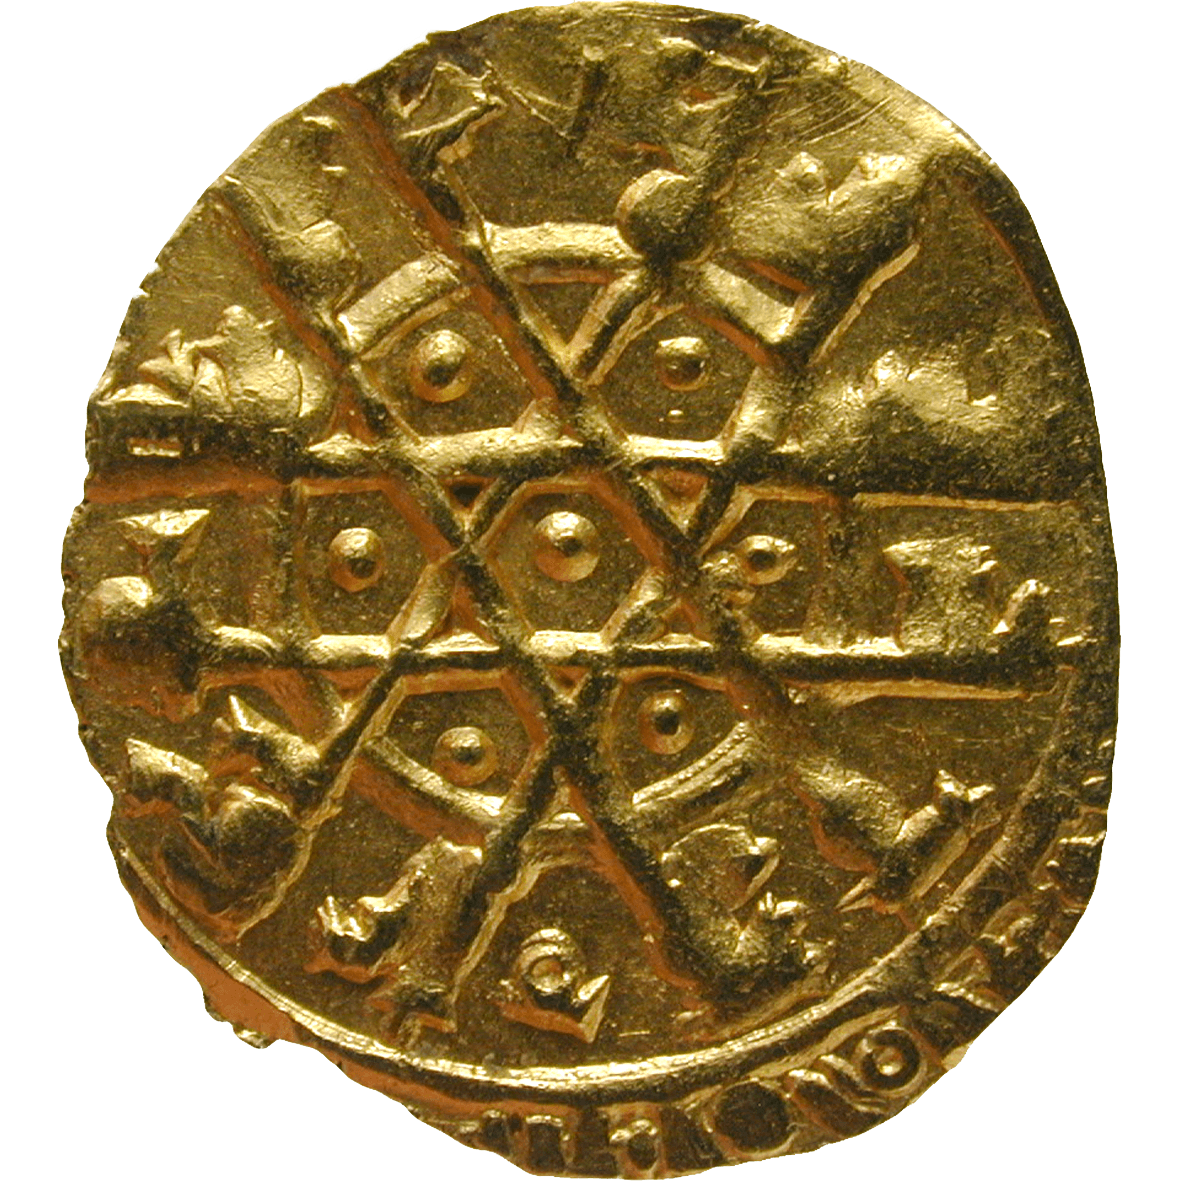 Sicily, Fatimid Empire, al-Mustansir, Quarter Dinar 445 AH (reverse)